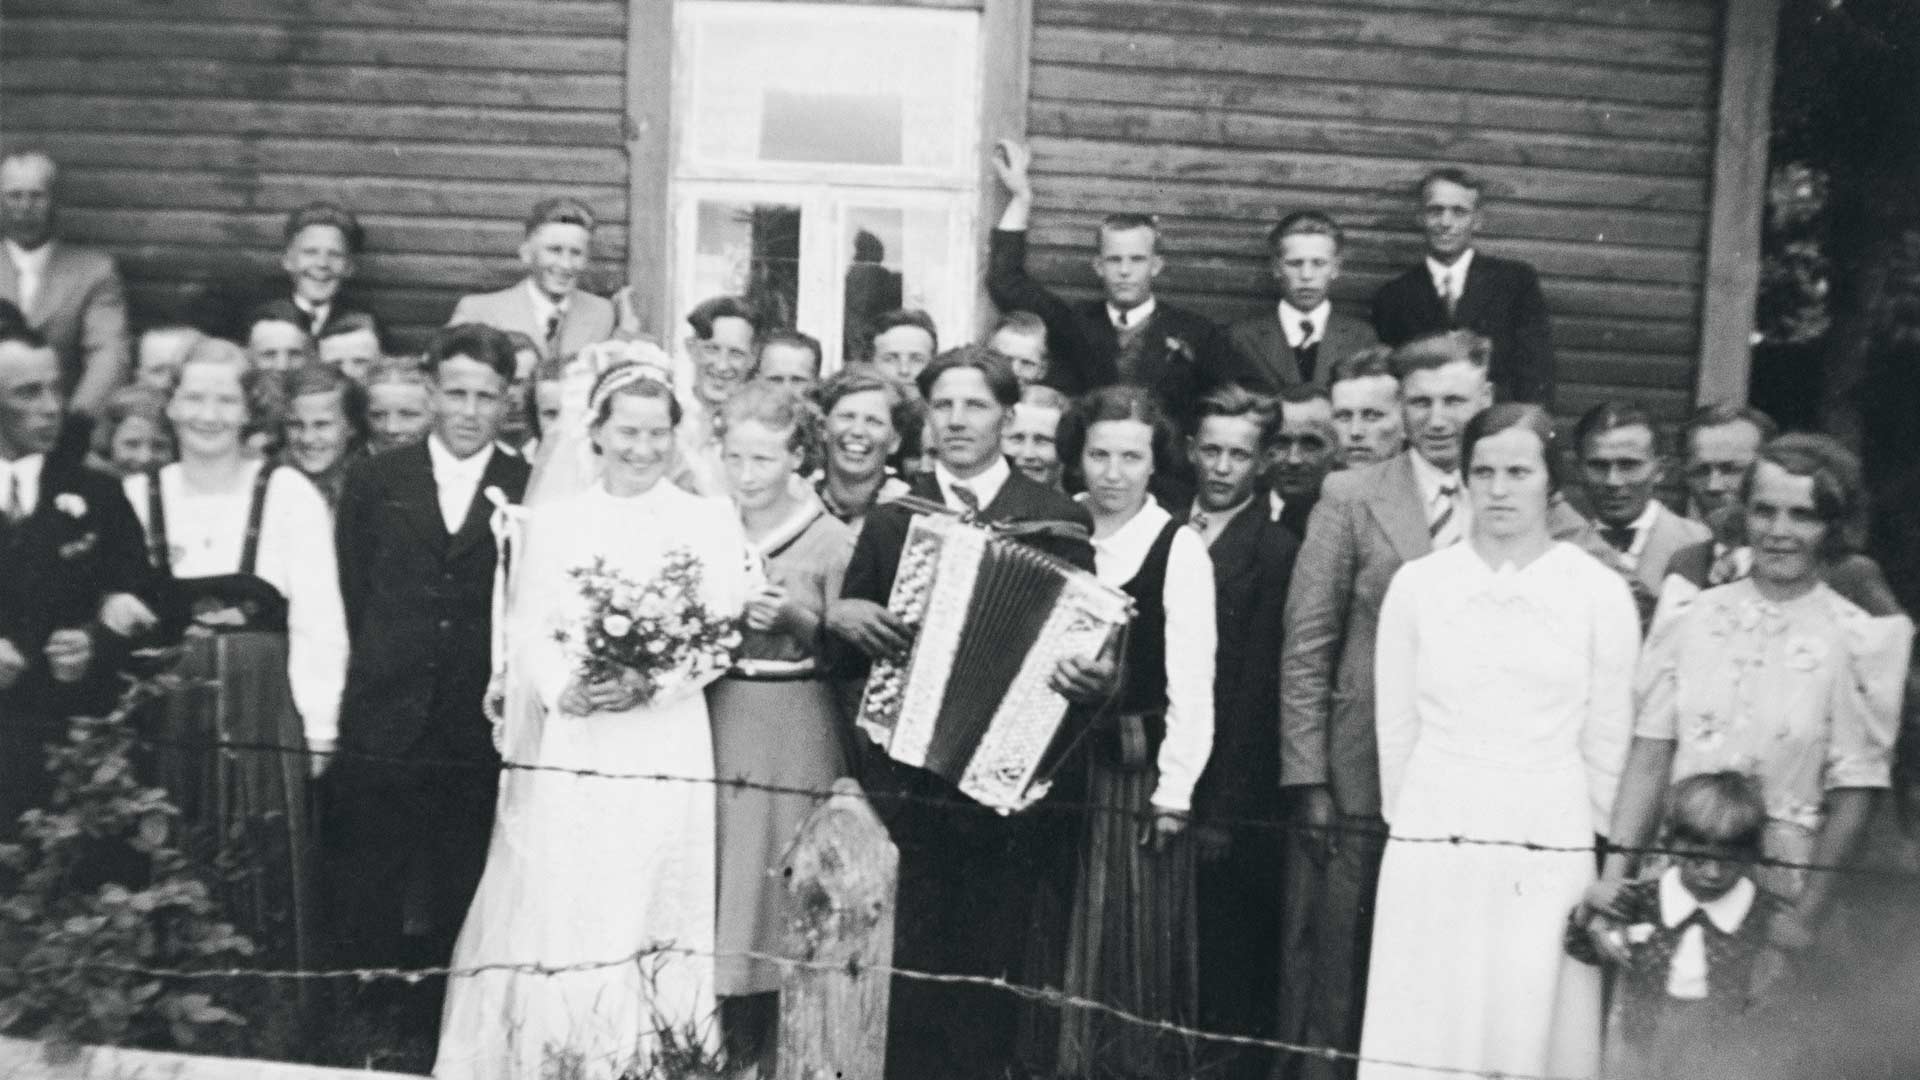 Saima ja Mauno vihittiin juhannuksena 1939, mutta sota heitti liittoon synkän varjonsa ja yhteiselo jäi lyhyeksi.